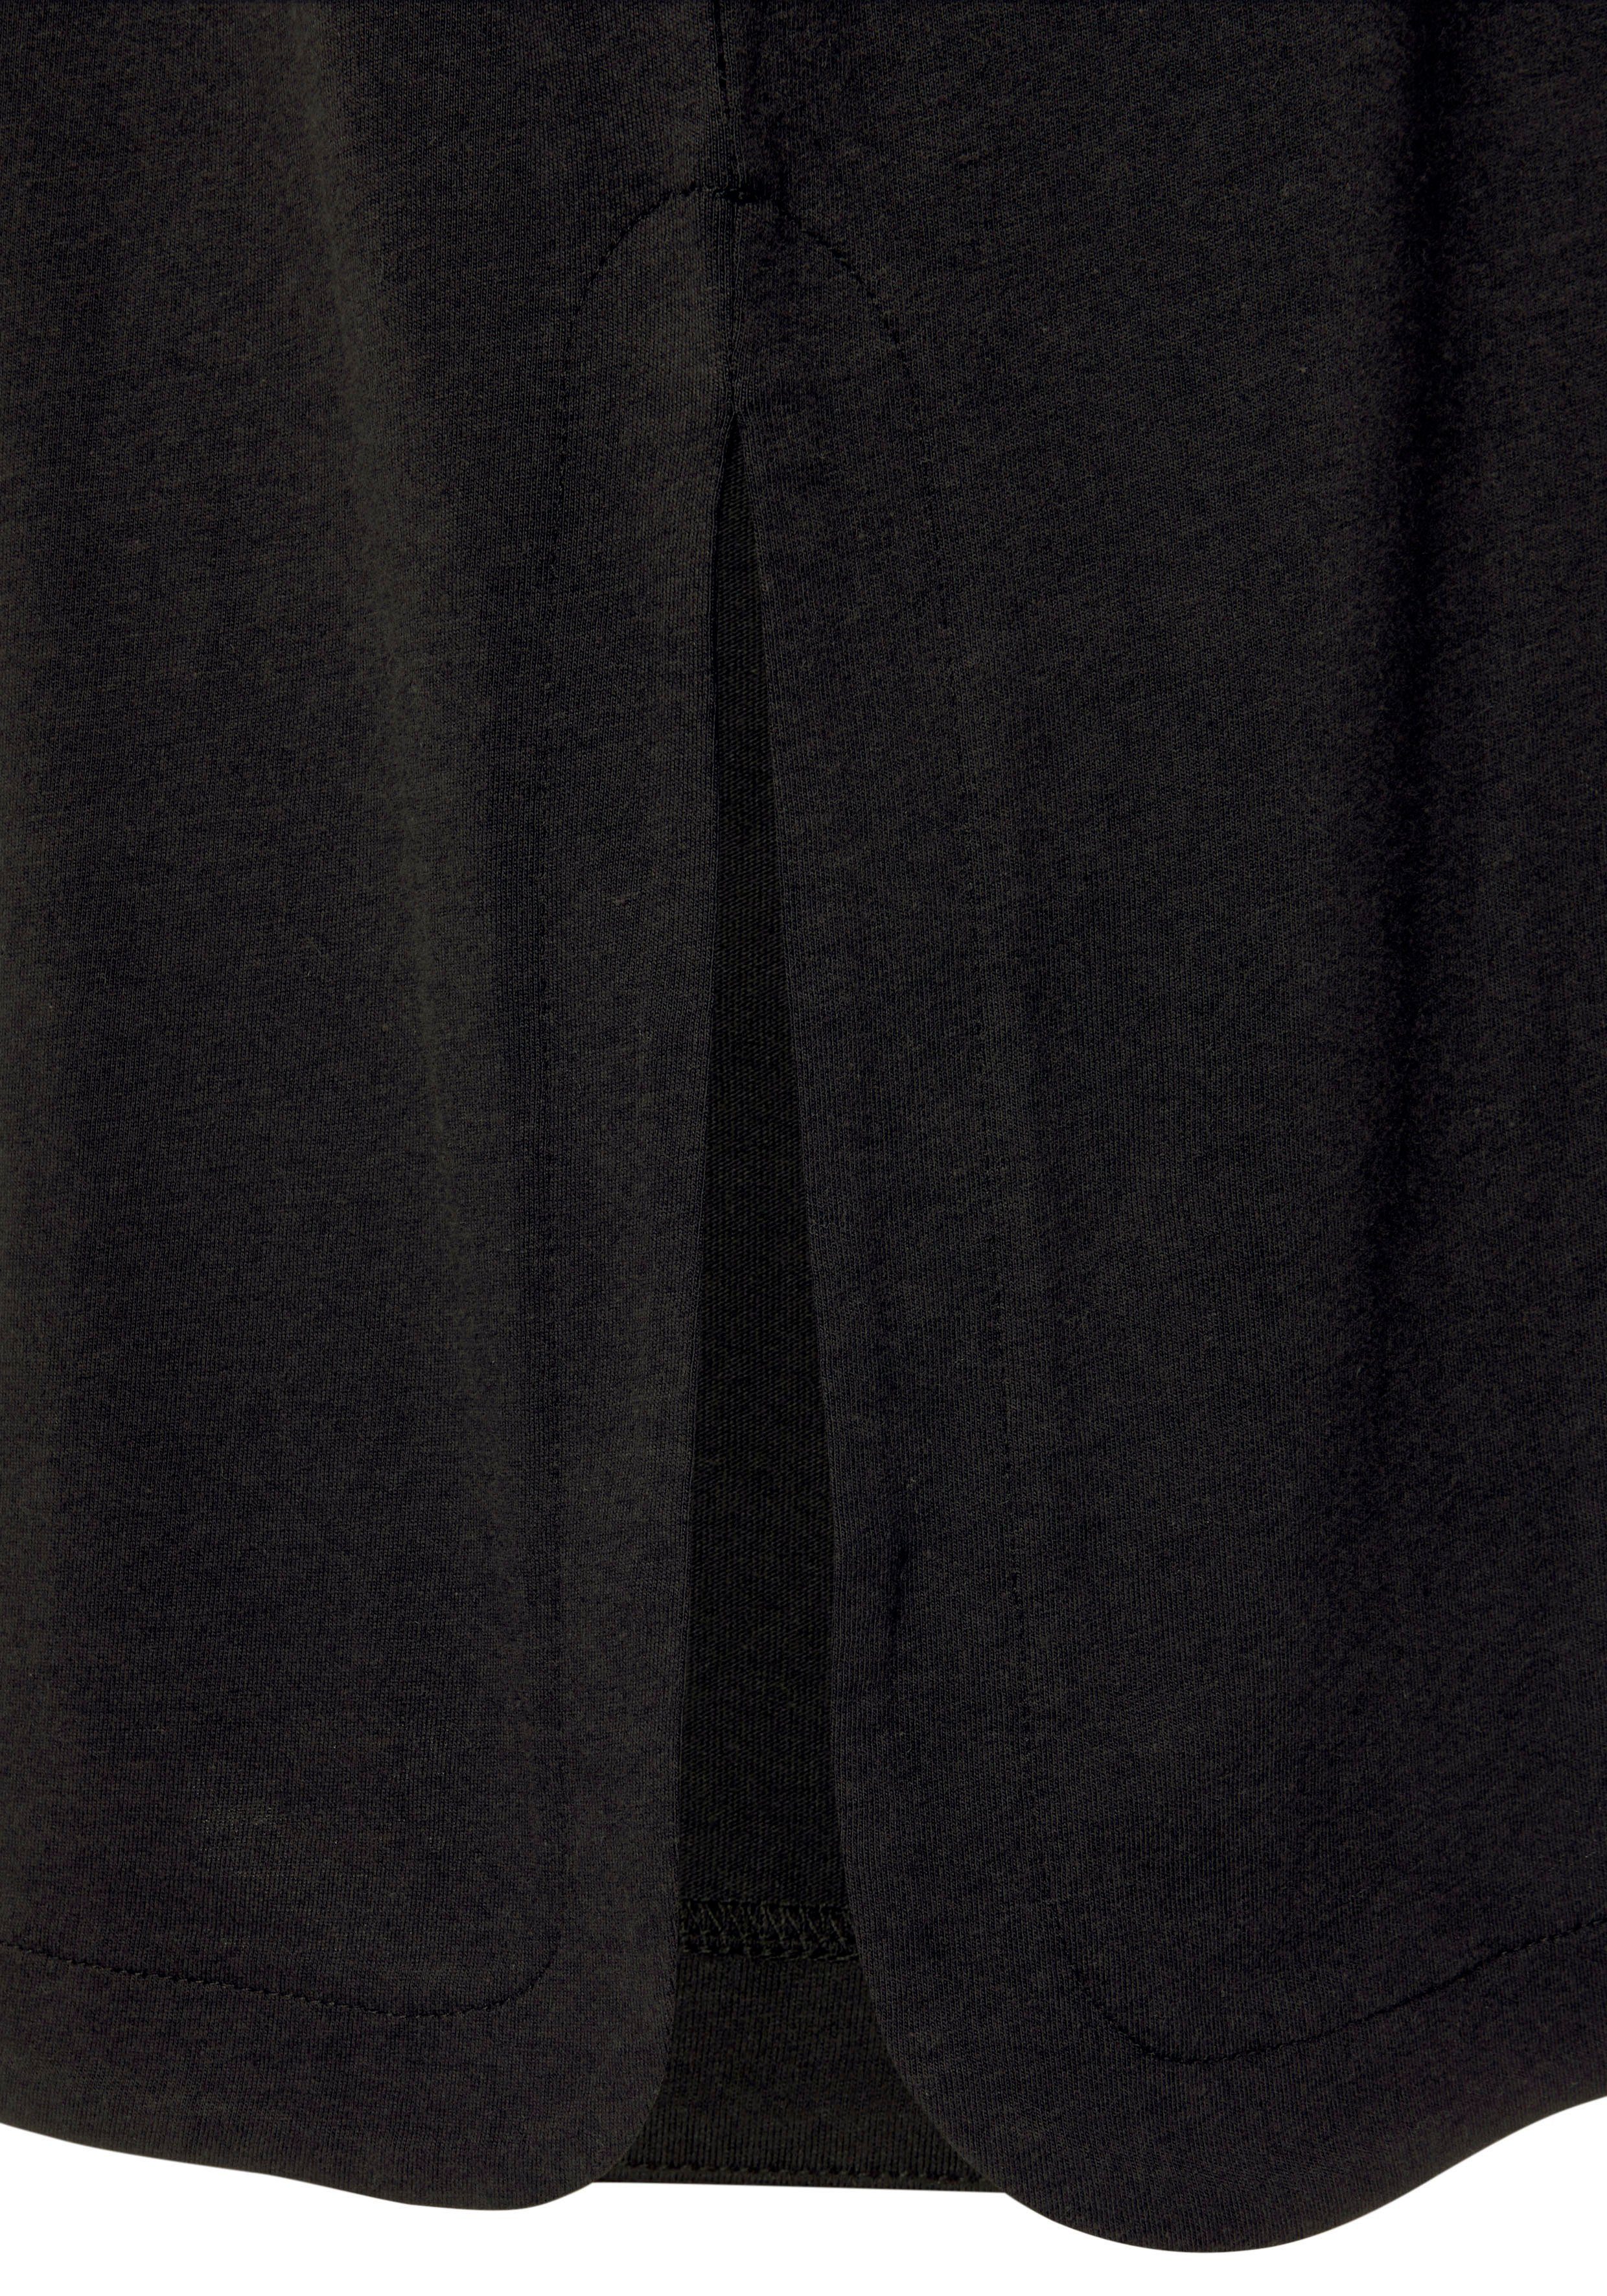 Vivance Dreams Foildruck Nachthemd (1-tlg) mit schönem schwarz